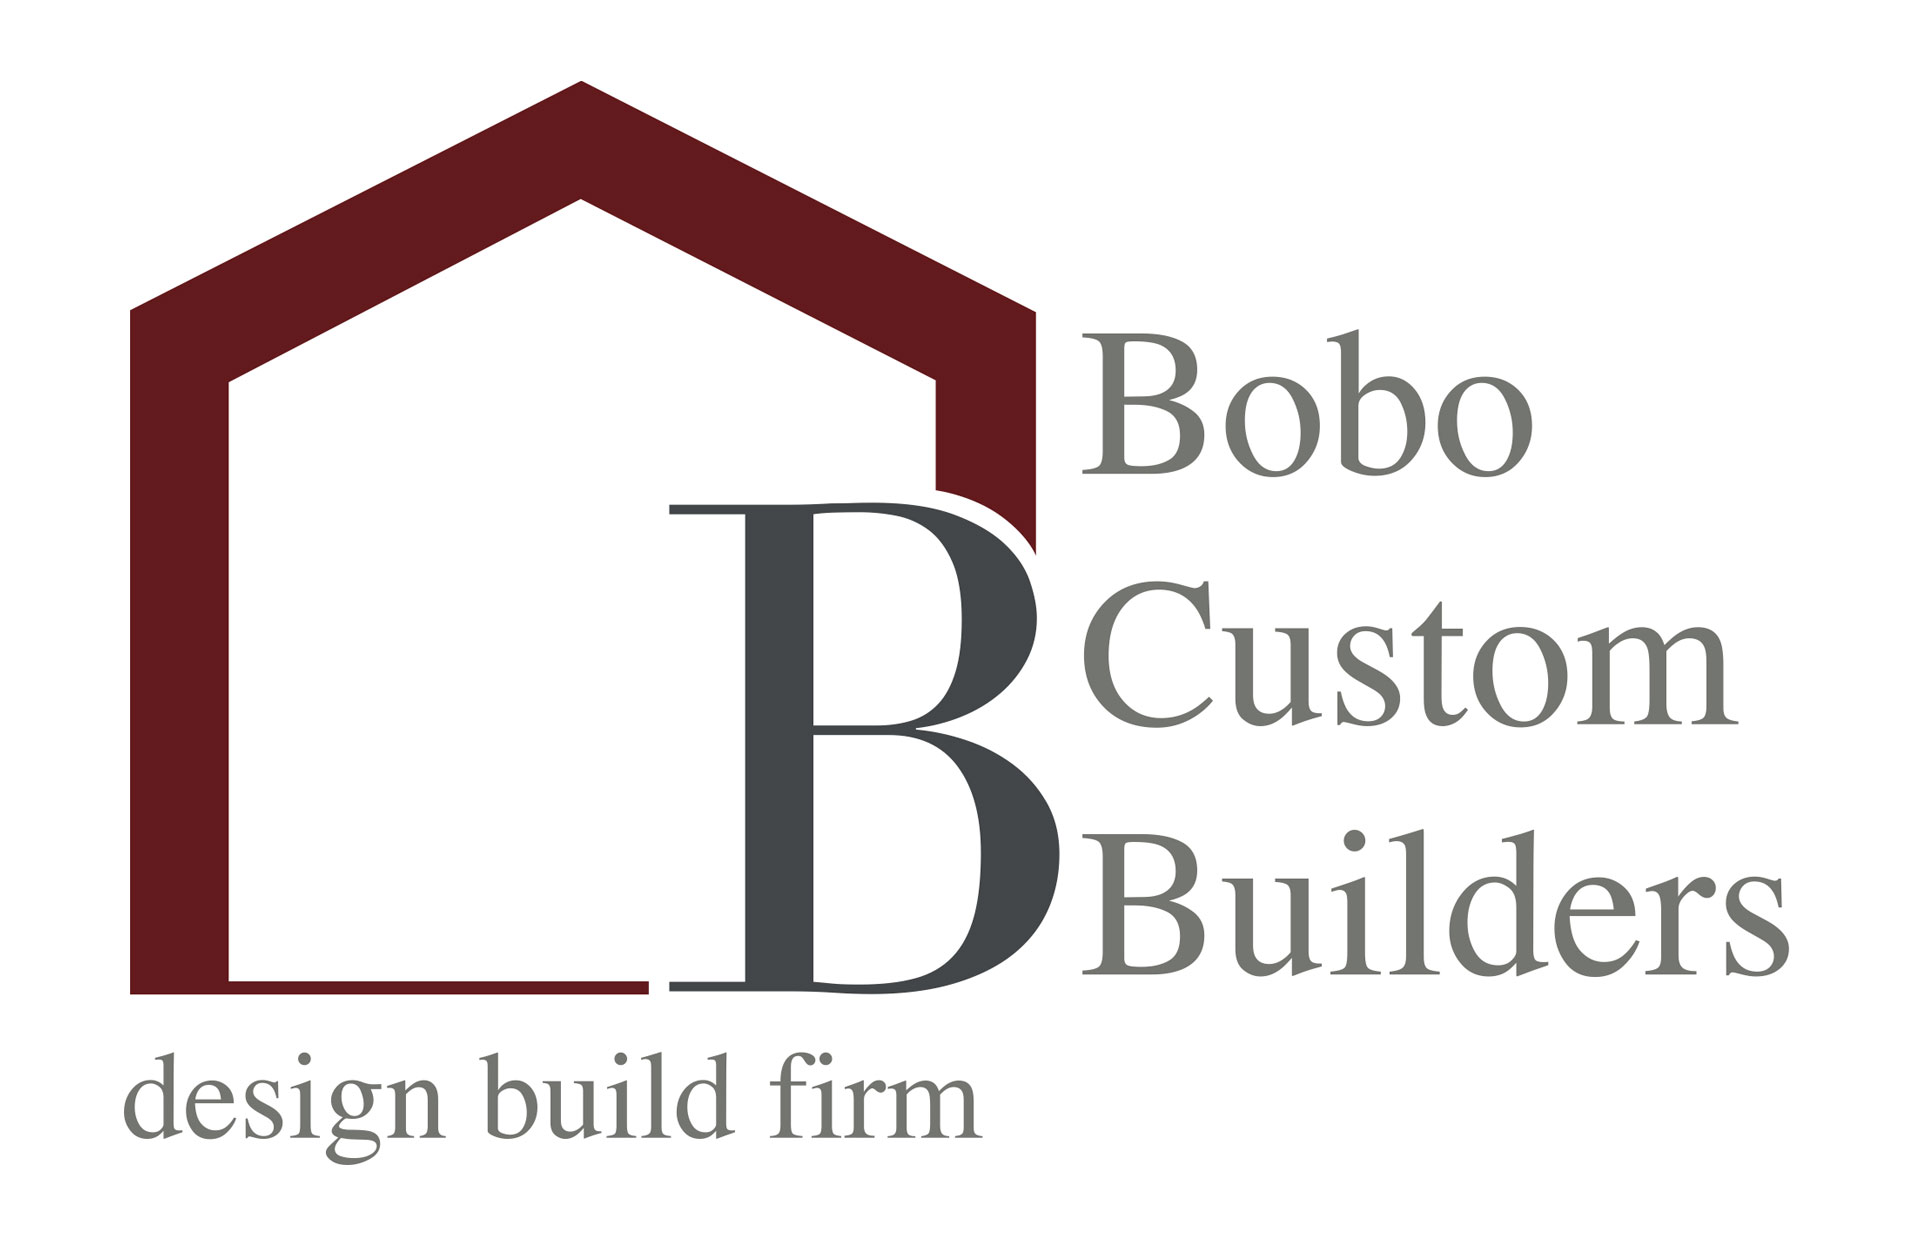 Bobo Design Build